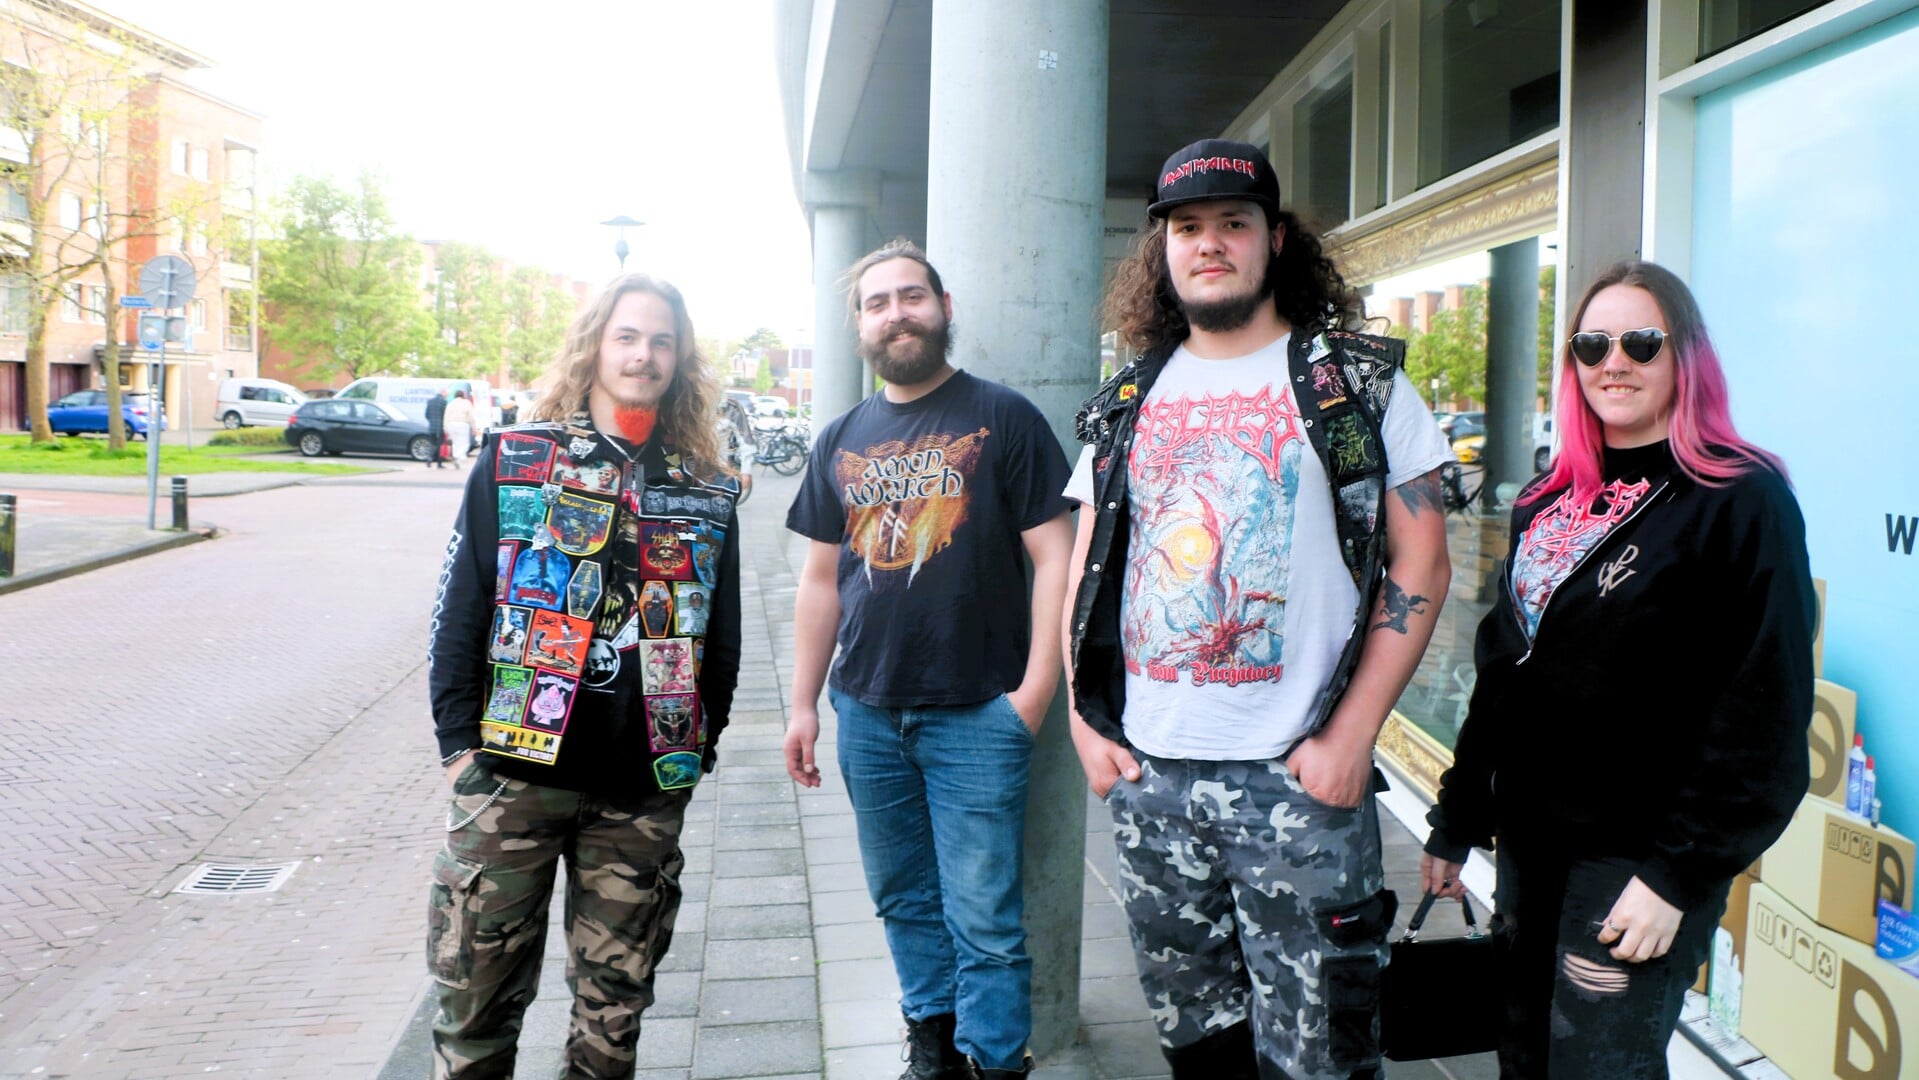 Deathmetal concert in Het Bolwerk